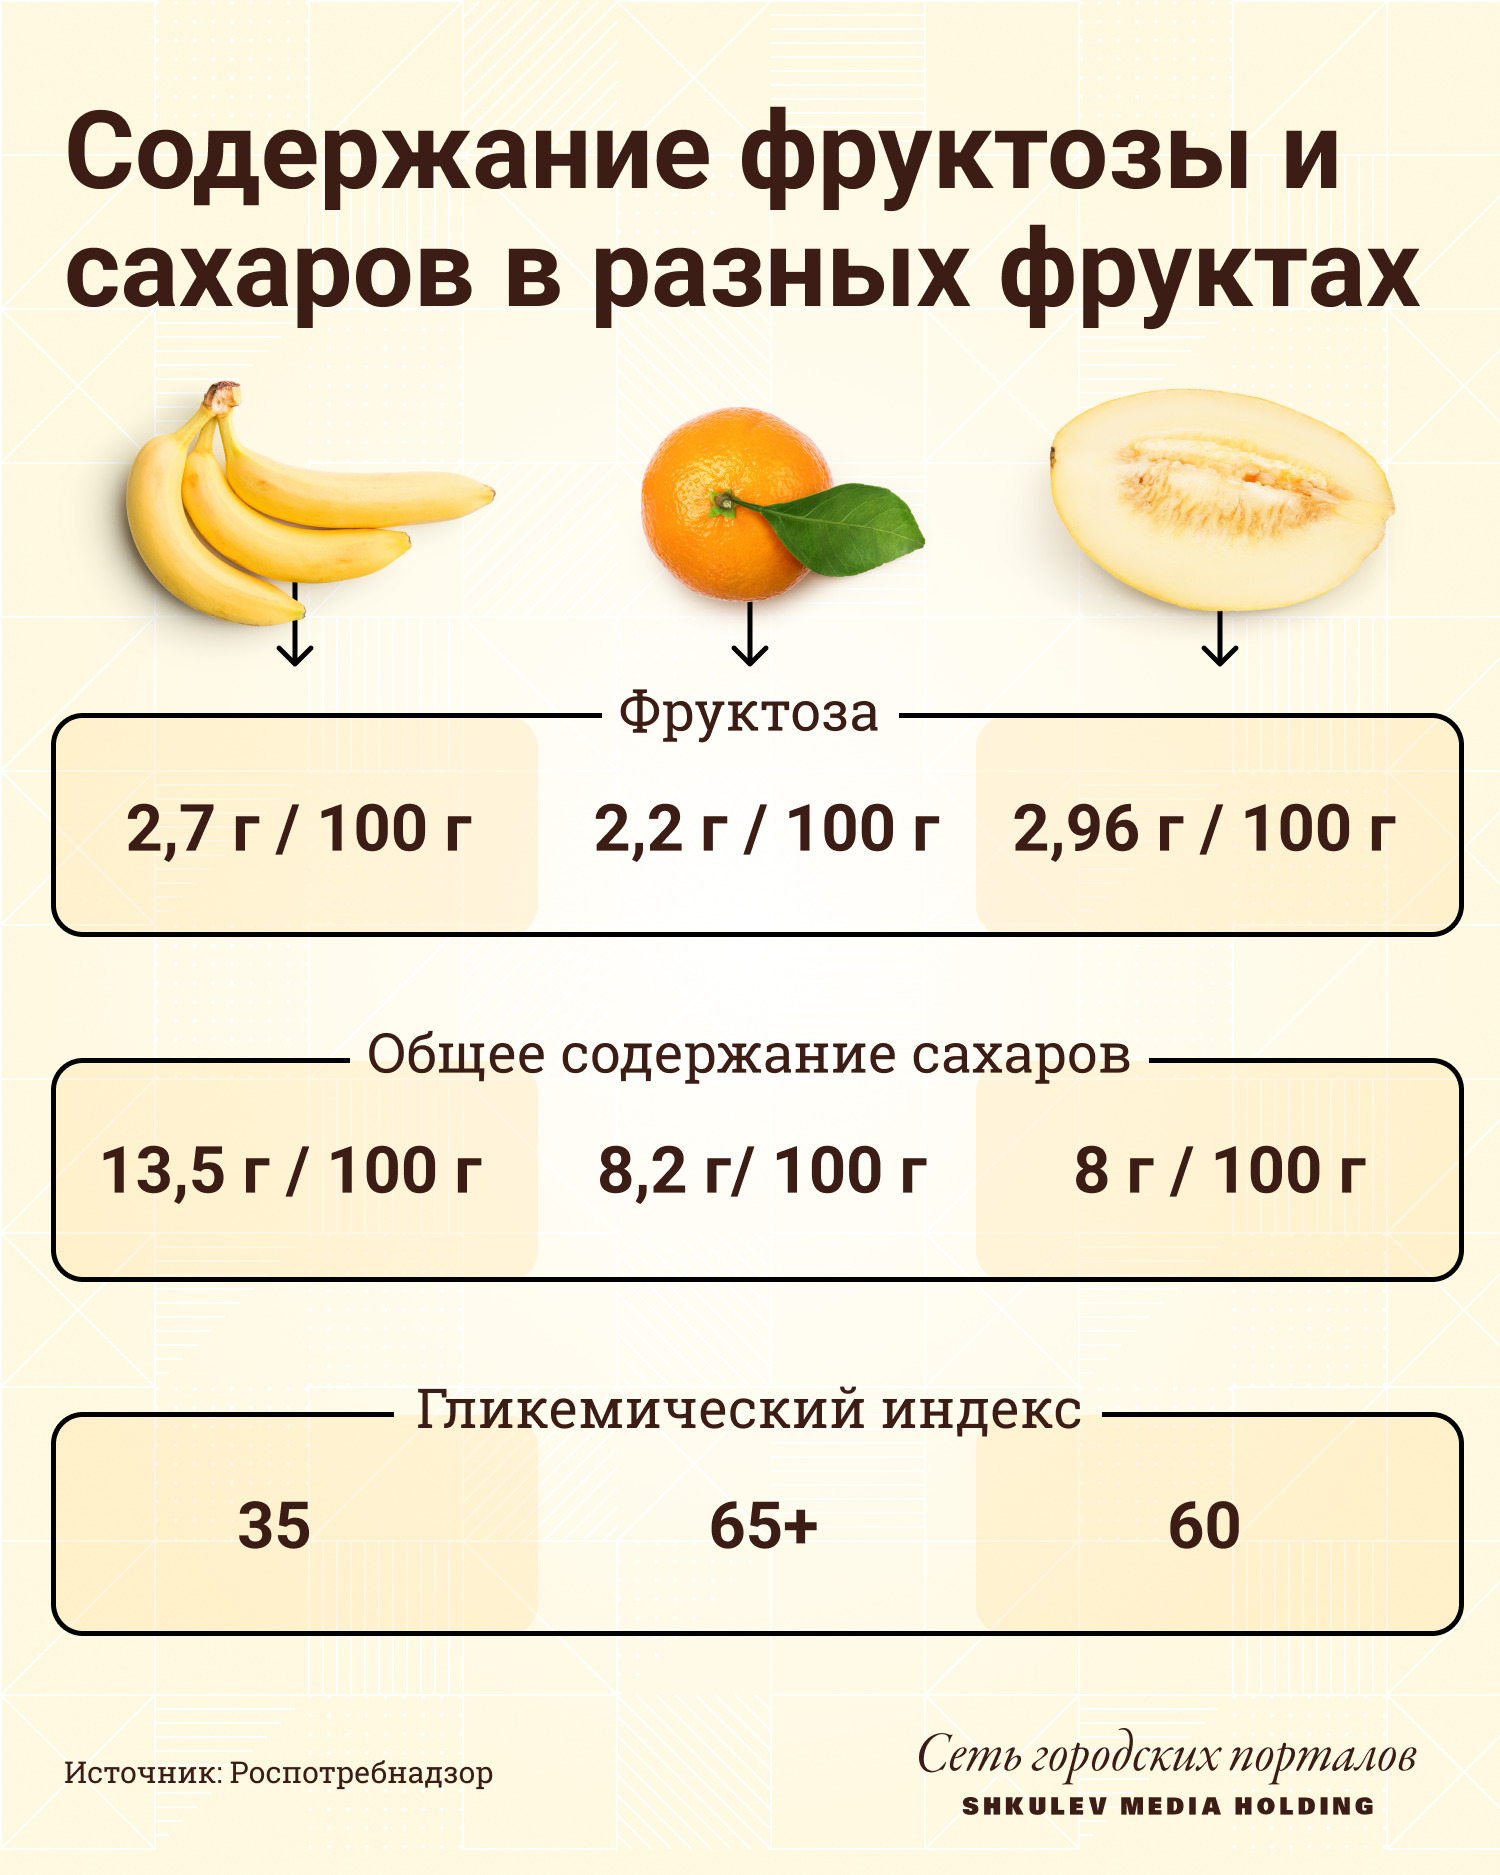 Бананы — чемпионы по сахару, а апельсины — по гликемическому индексу